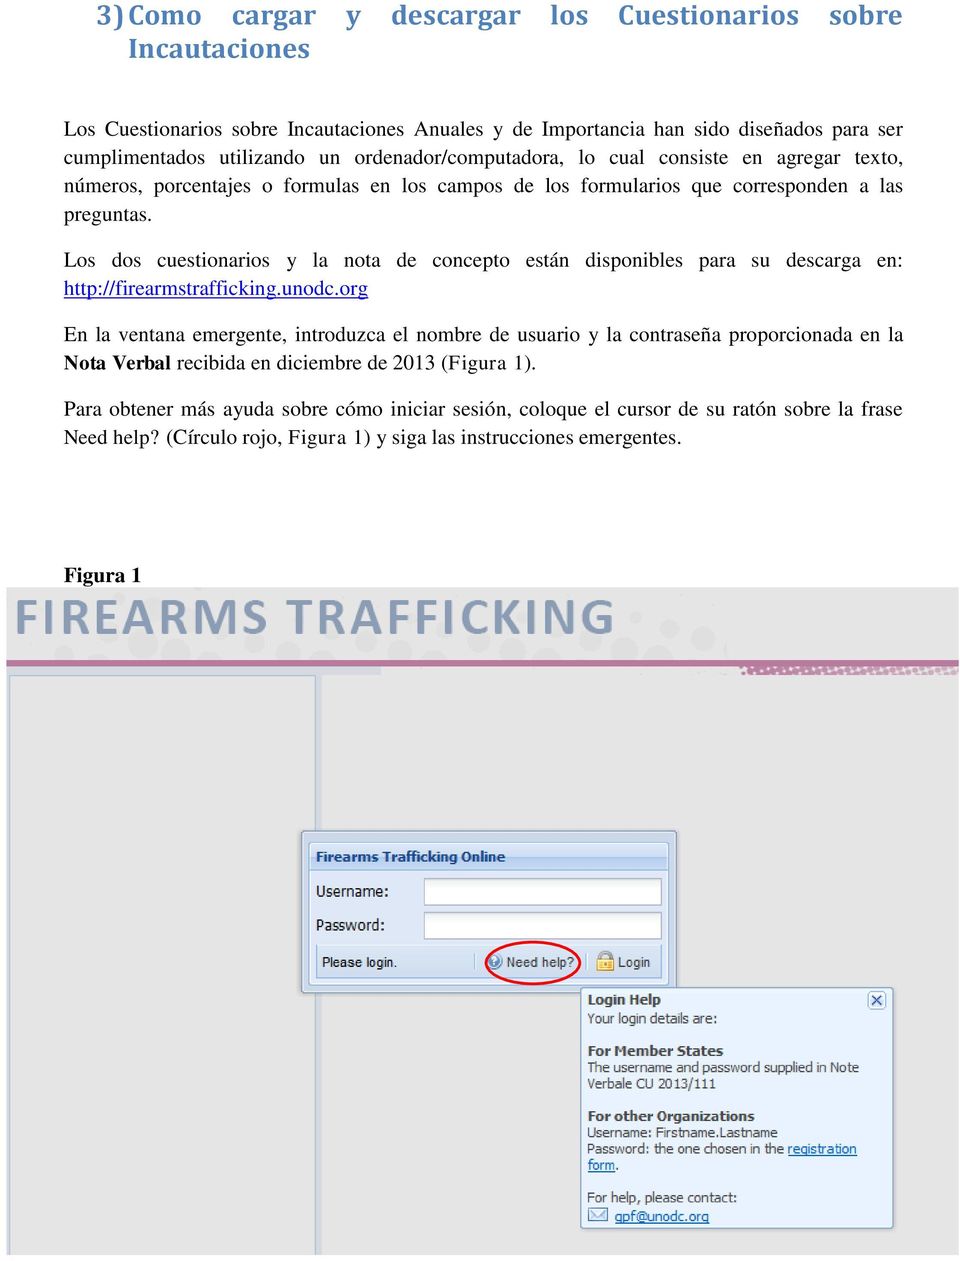 Los dos cuestionarios y la nota de concepto están disponibles para su descarga en: http://firearmstrafficking.unodc.